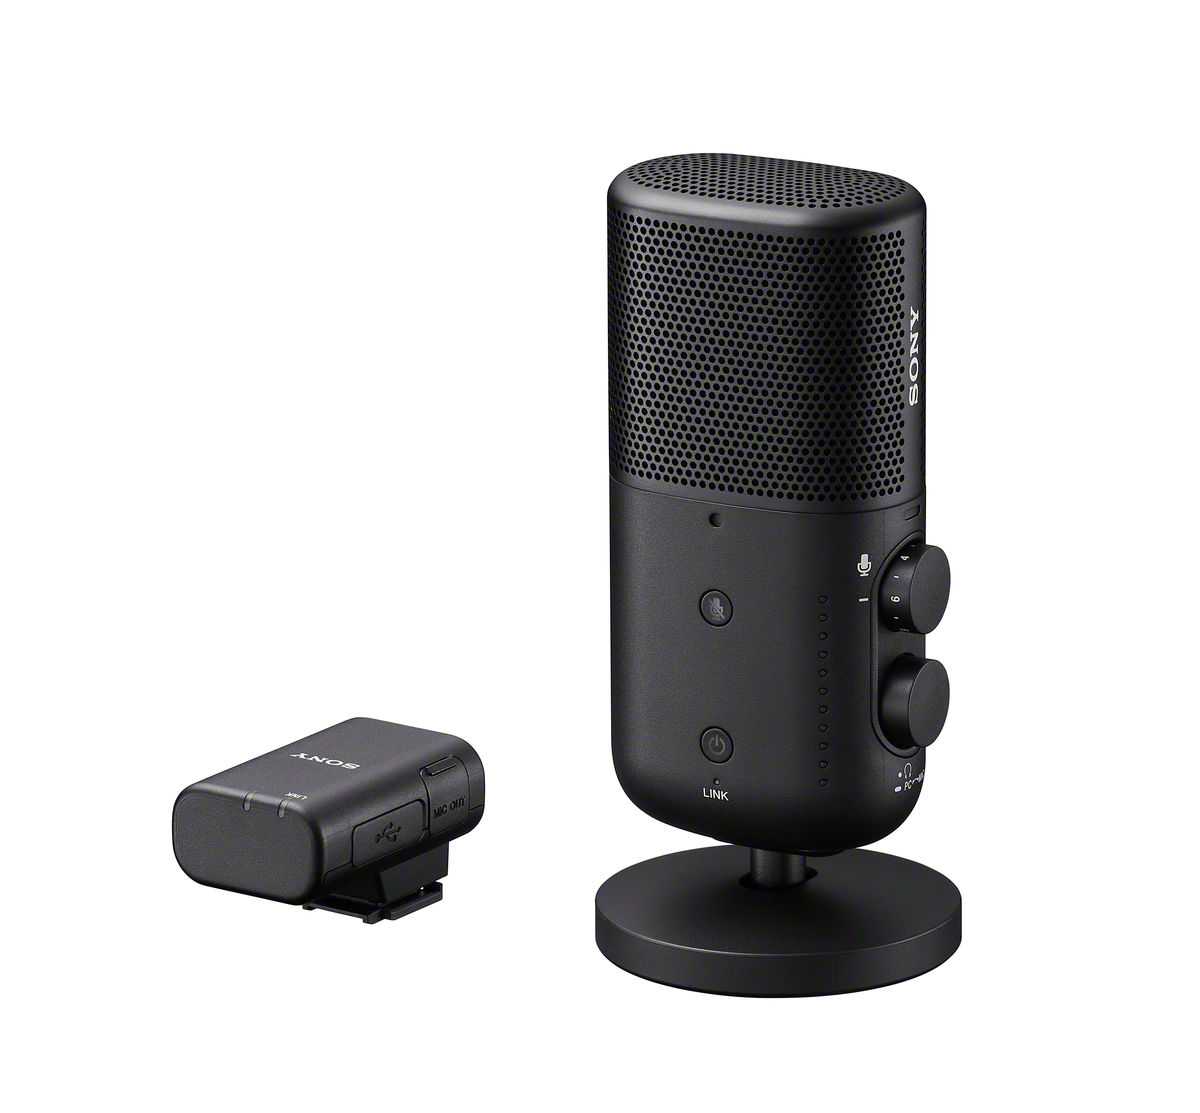 Sony presenta tre microfoni wireless con un livello spettacolare di qualità del suono, grande portabilità e leggerezza